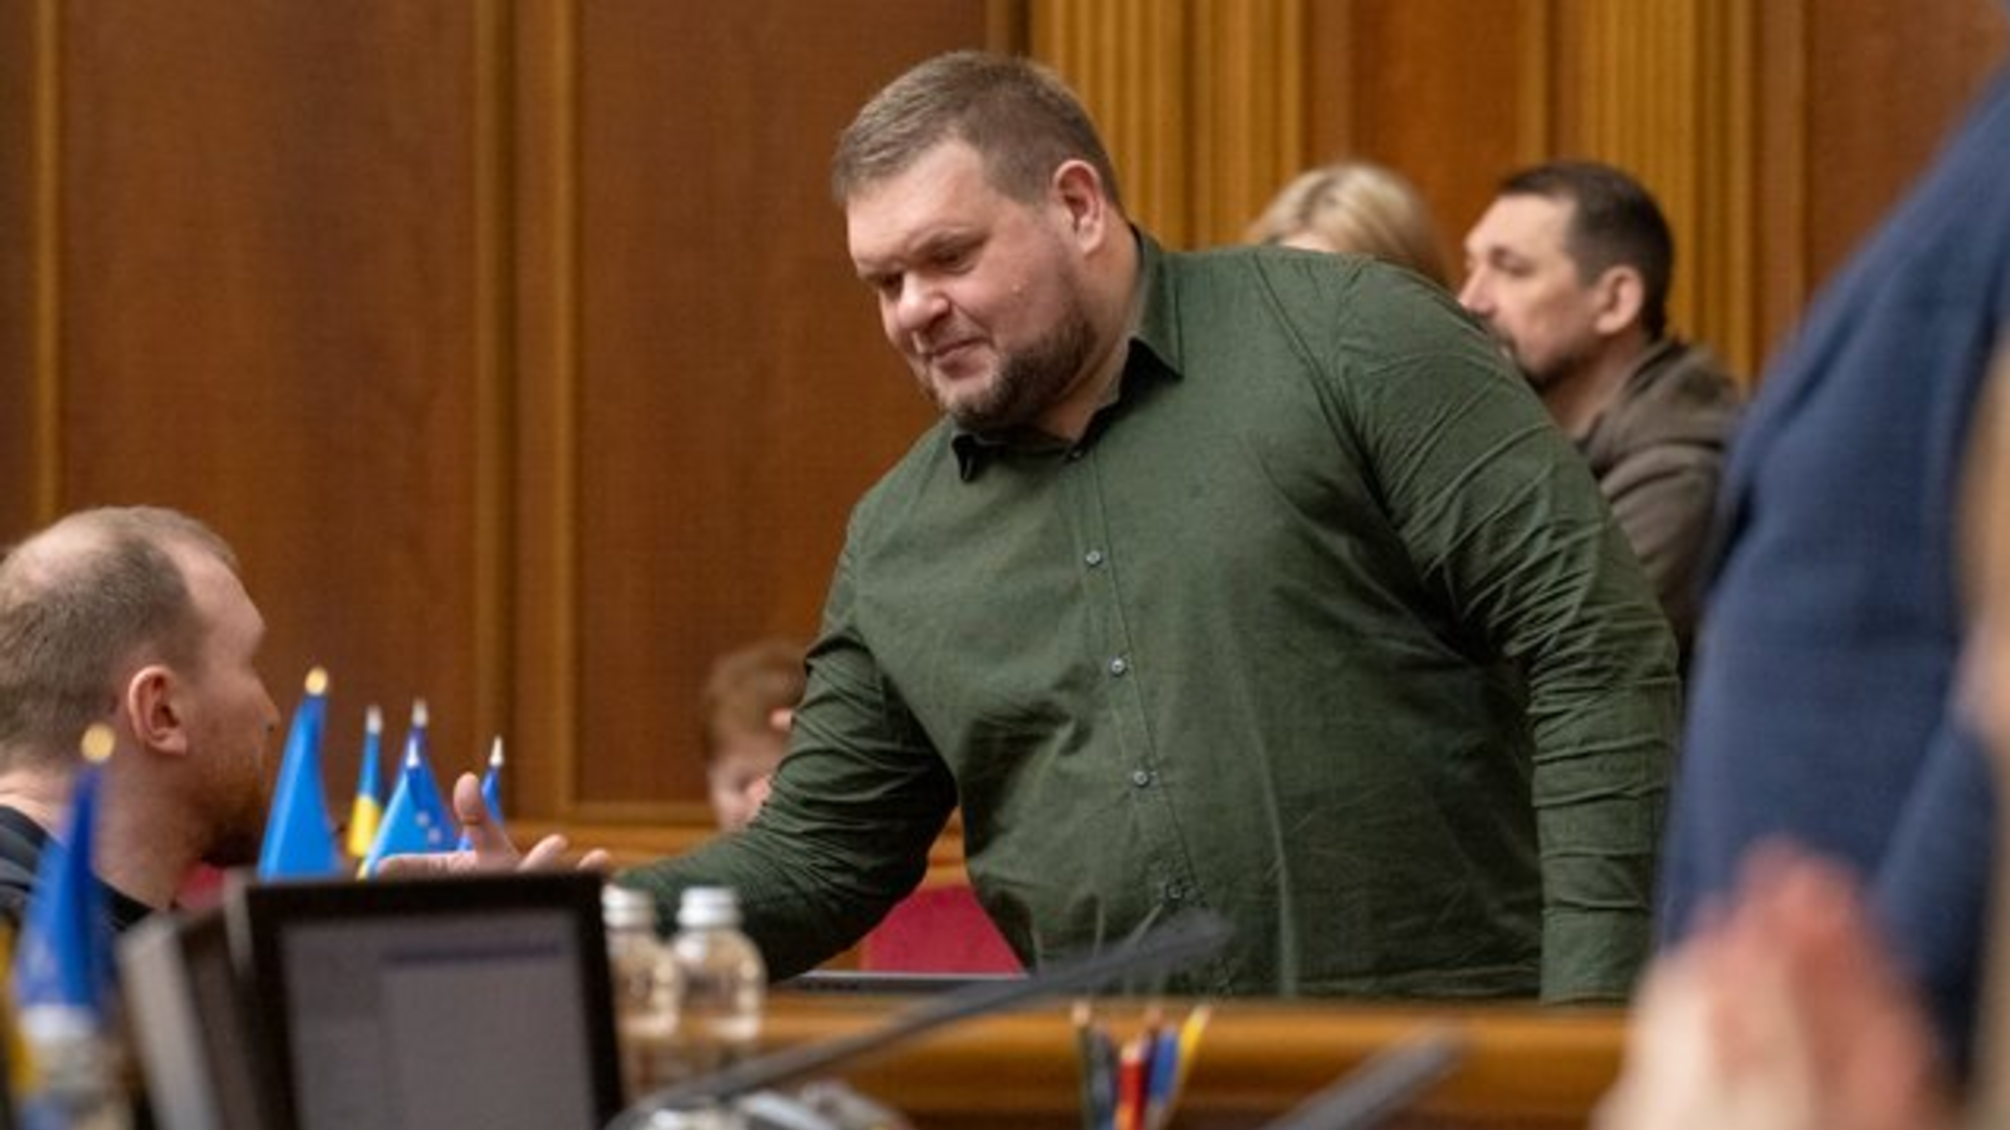 12 млн грн залога: ВАКС избрал меру пресечения народному депутату Клочко, – СМИ